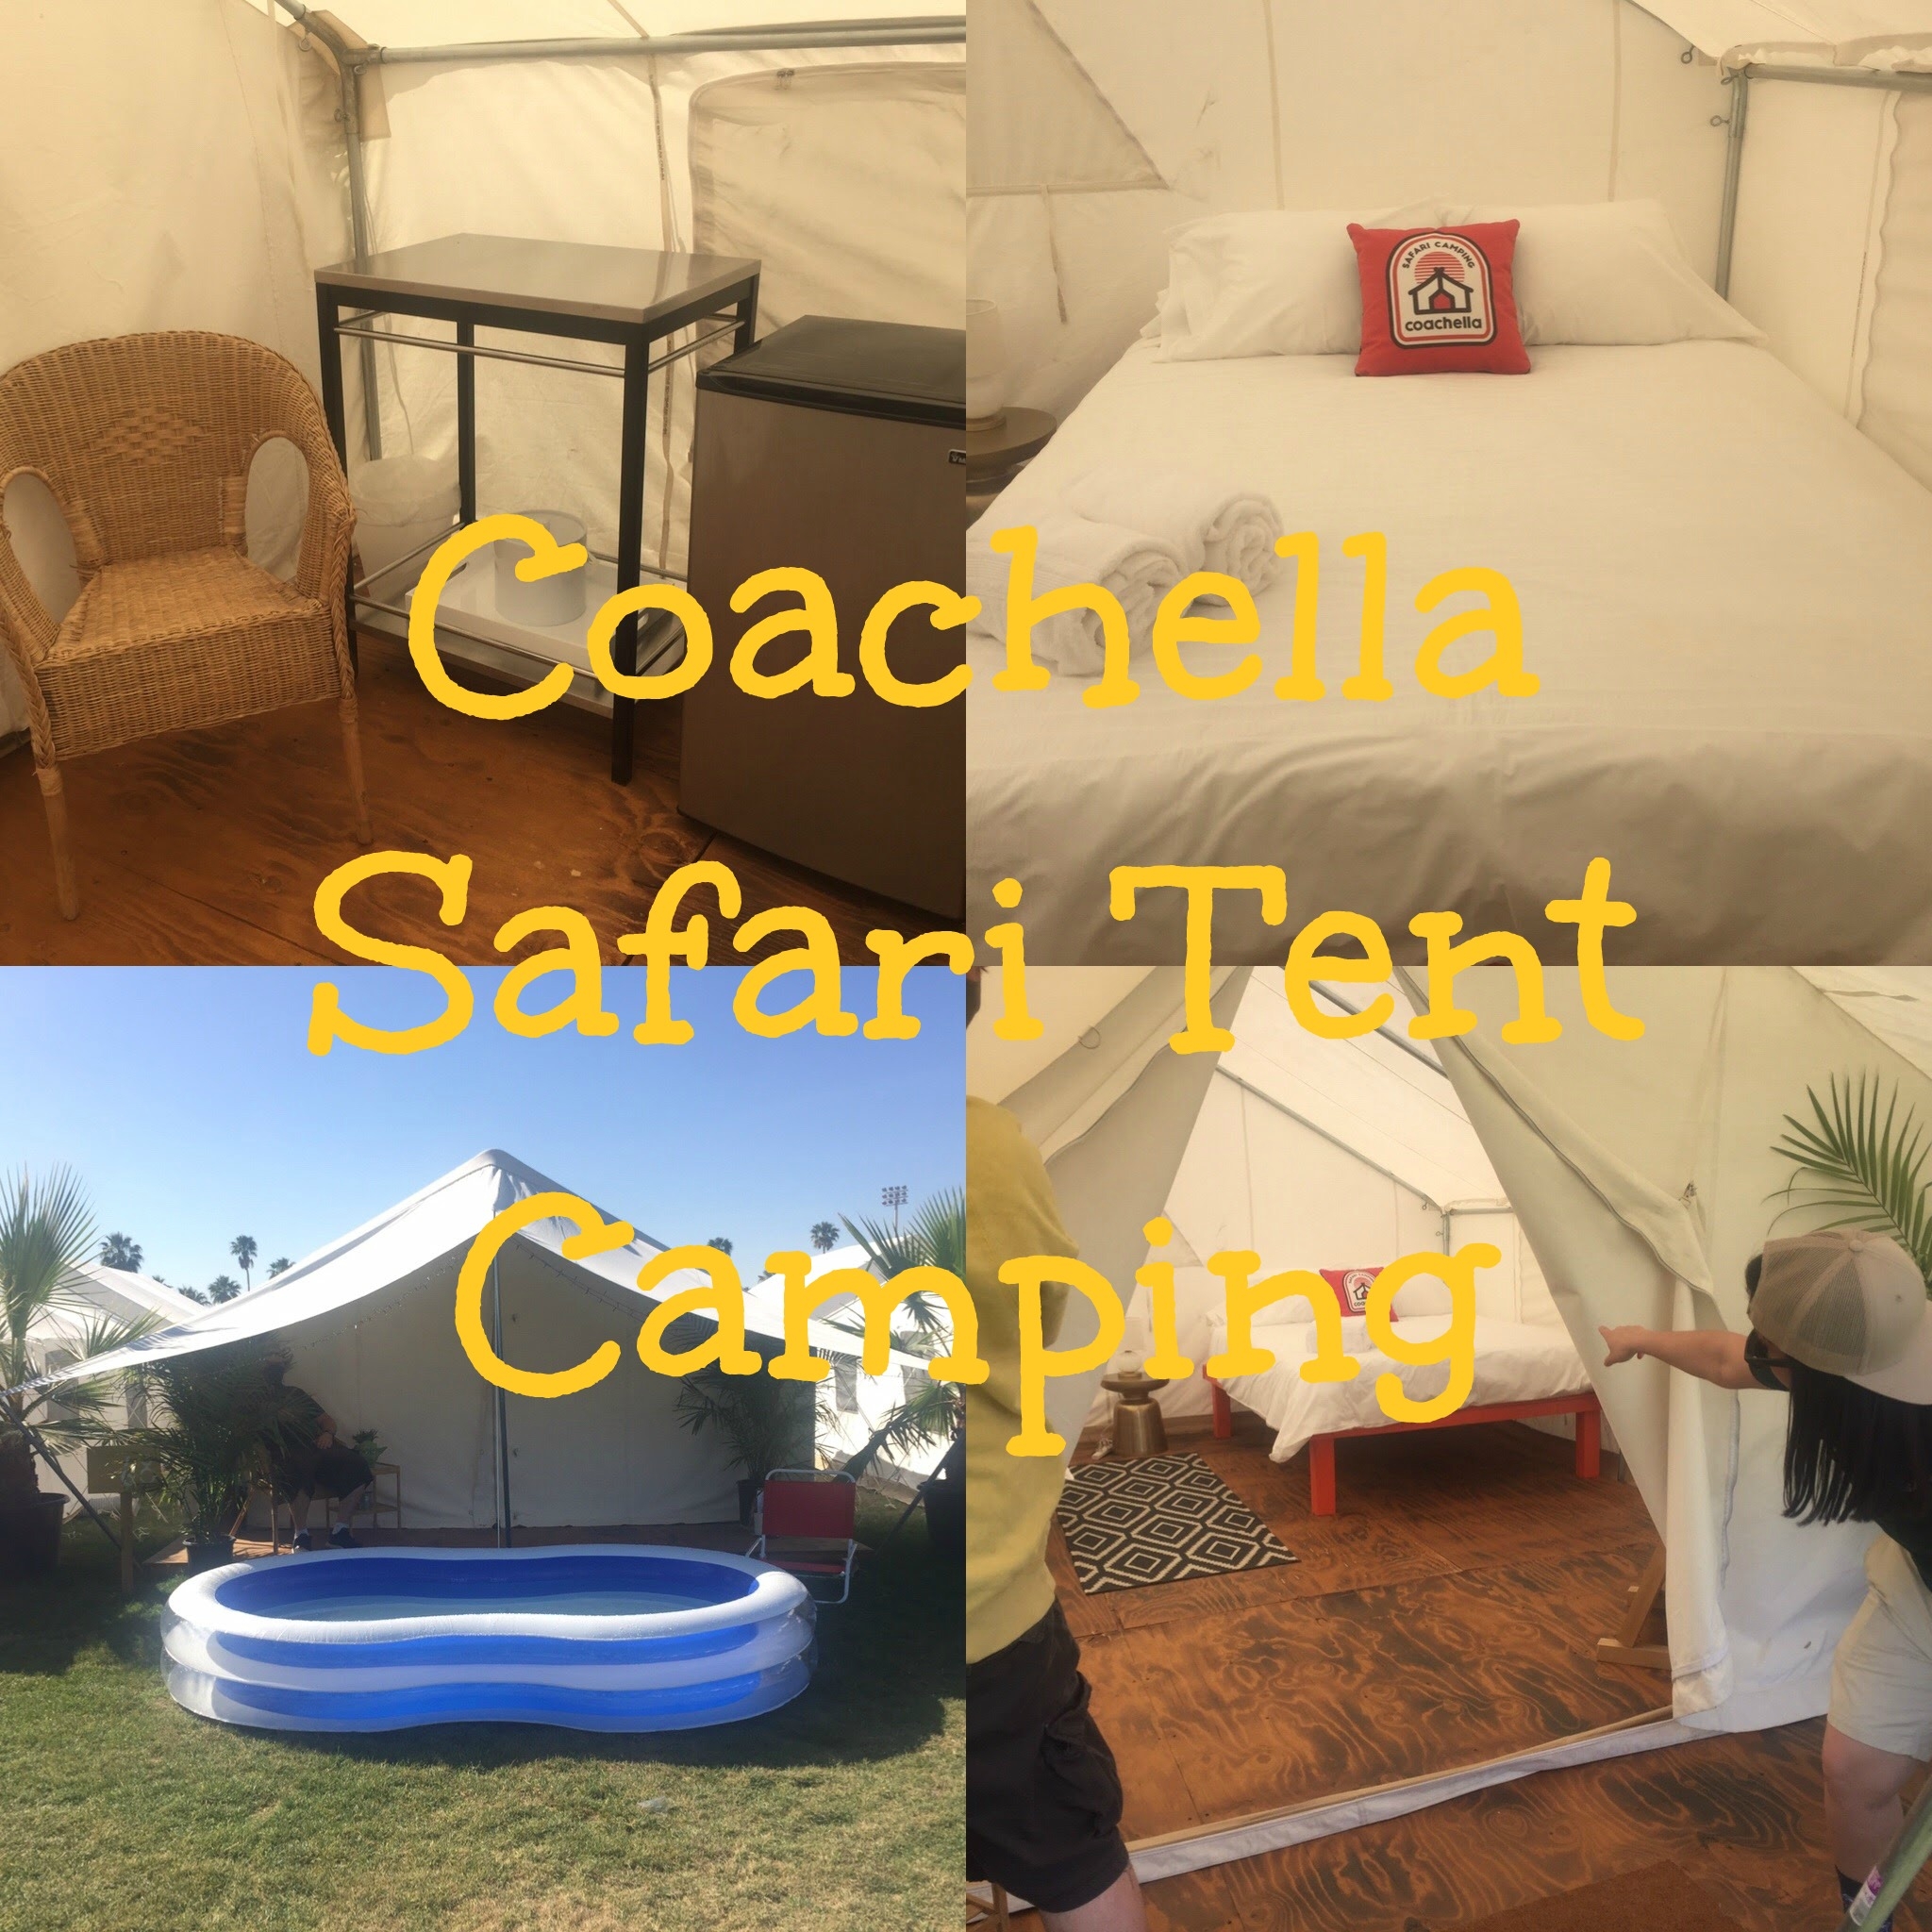 The Ultimate Guide to Coachella Safari Tent Camping Gatica's Road